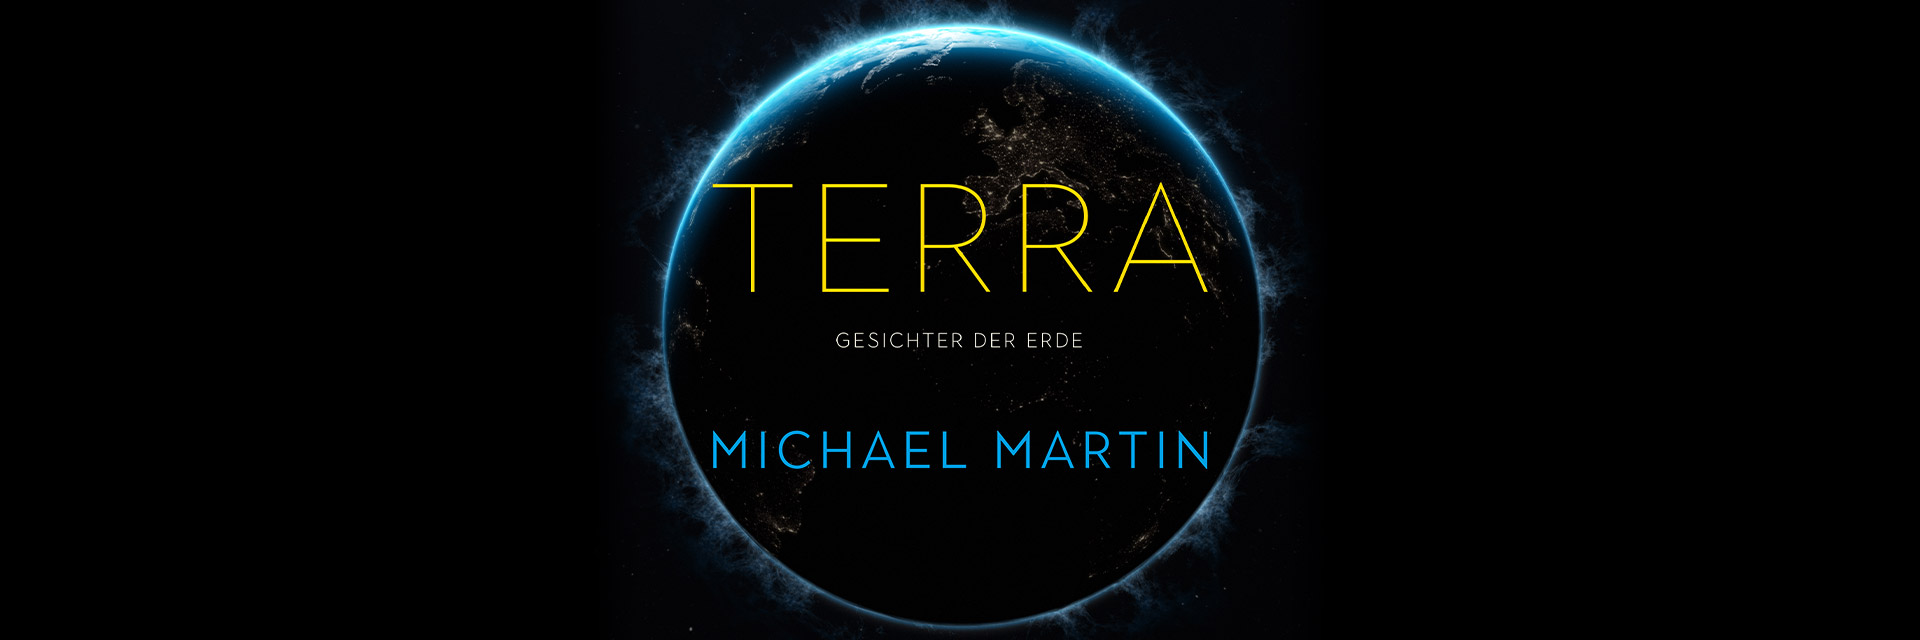 TERRA – Gesichter der Erde